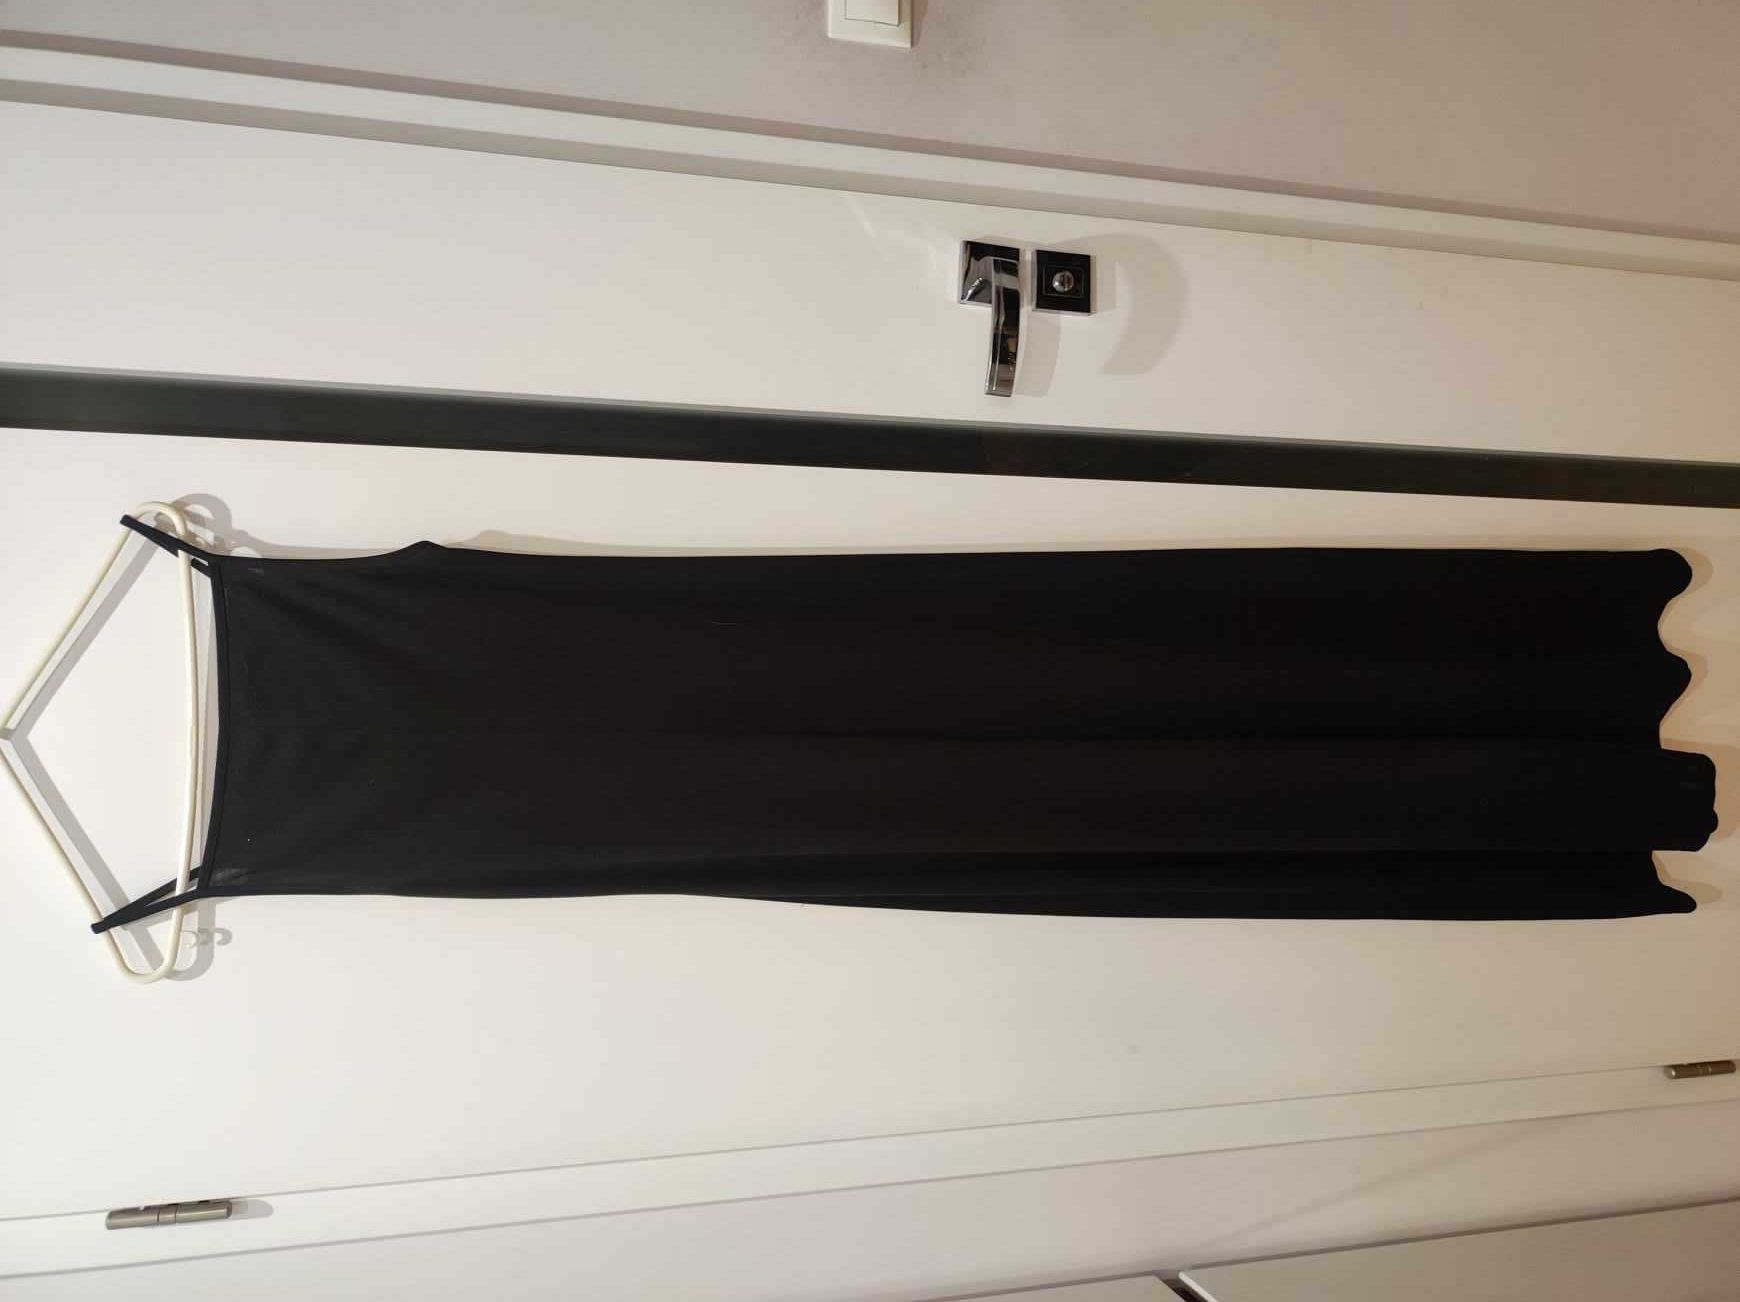 Czarna długa sukienka + narzutka wieczorowa studniówka XS/S